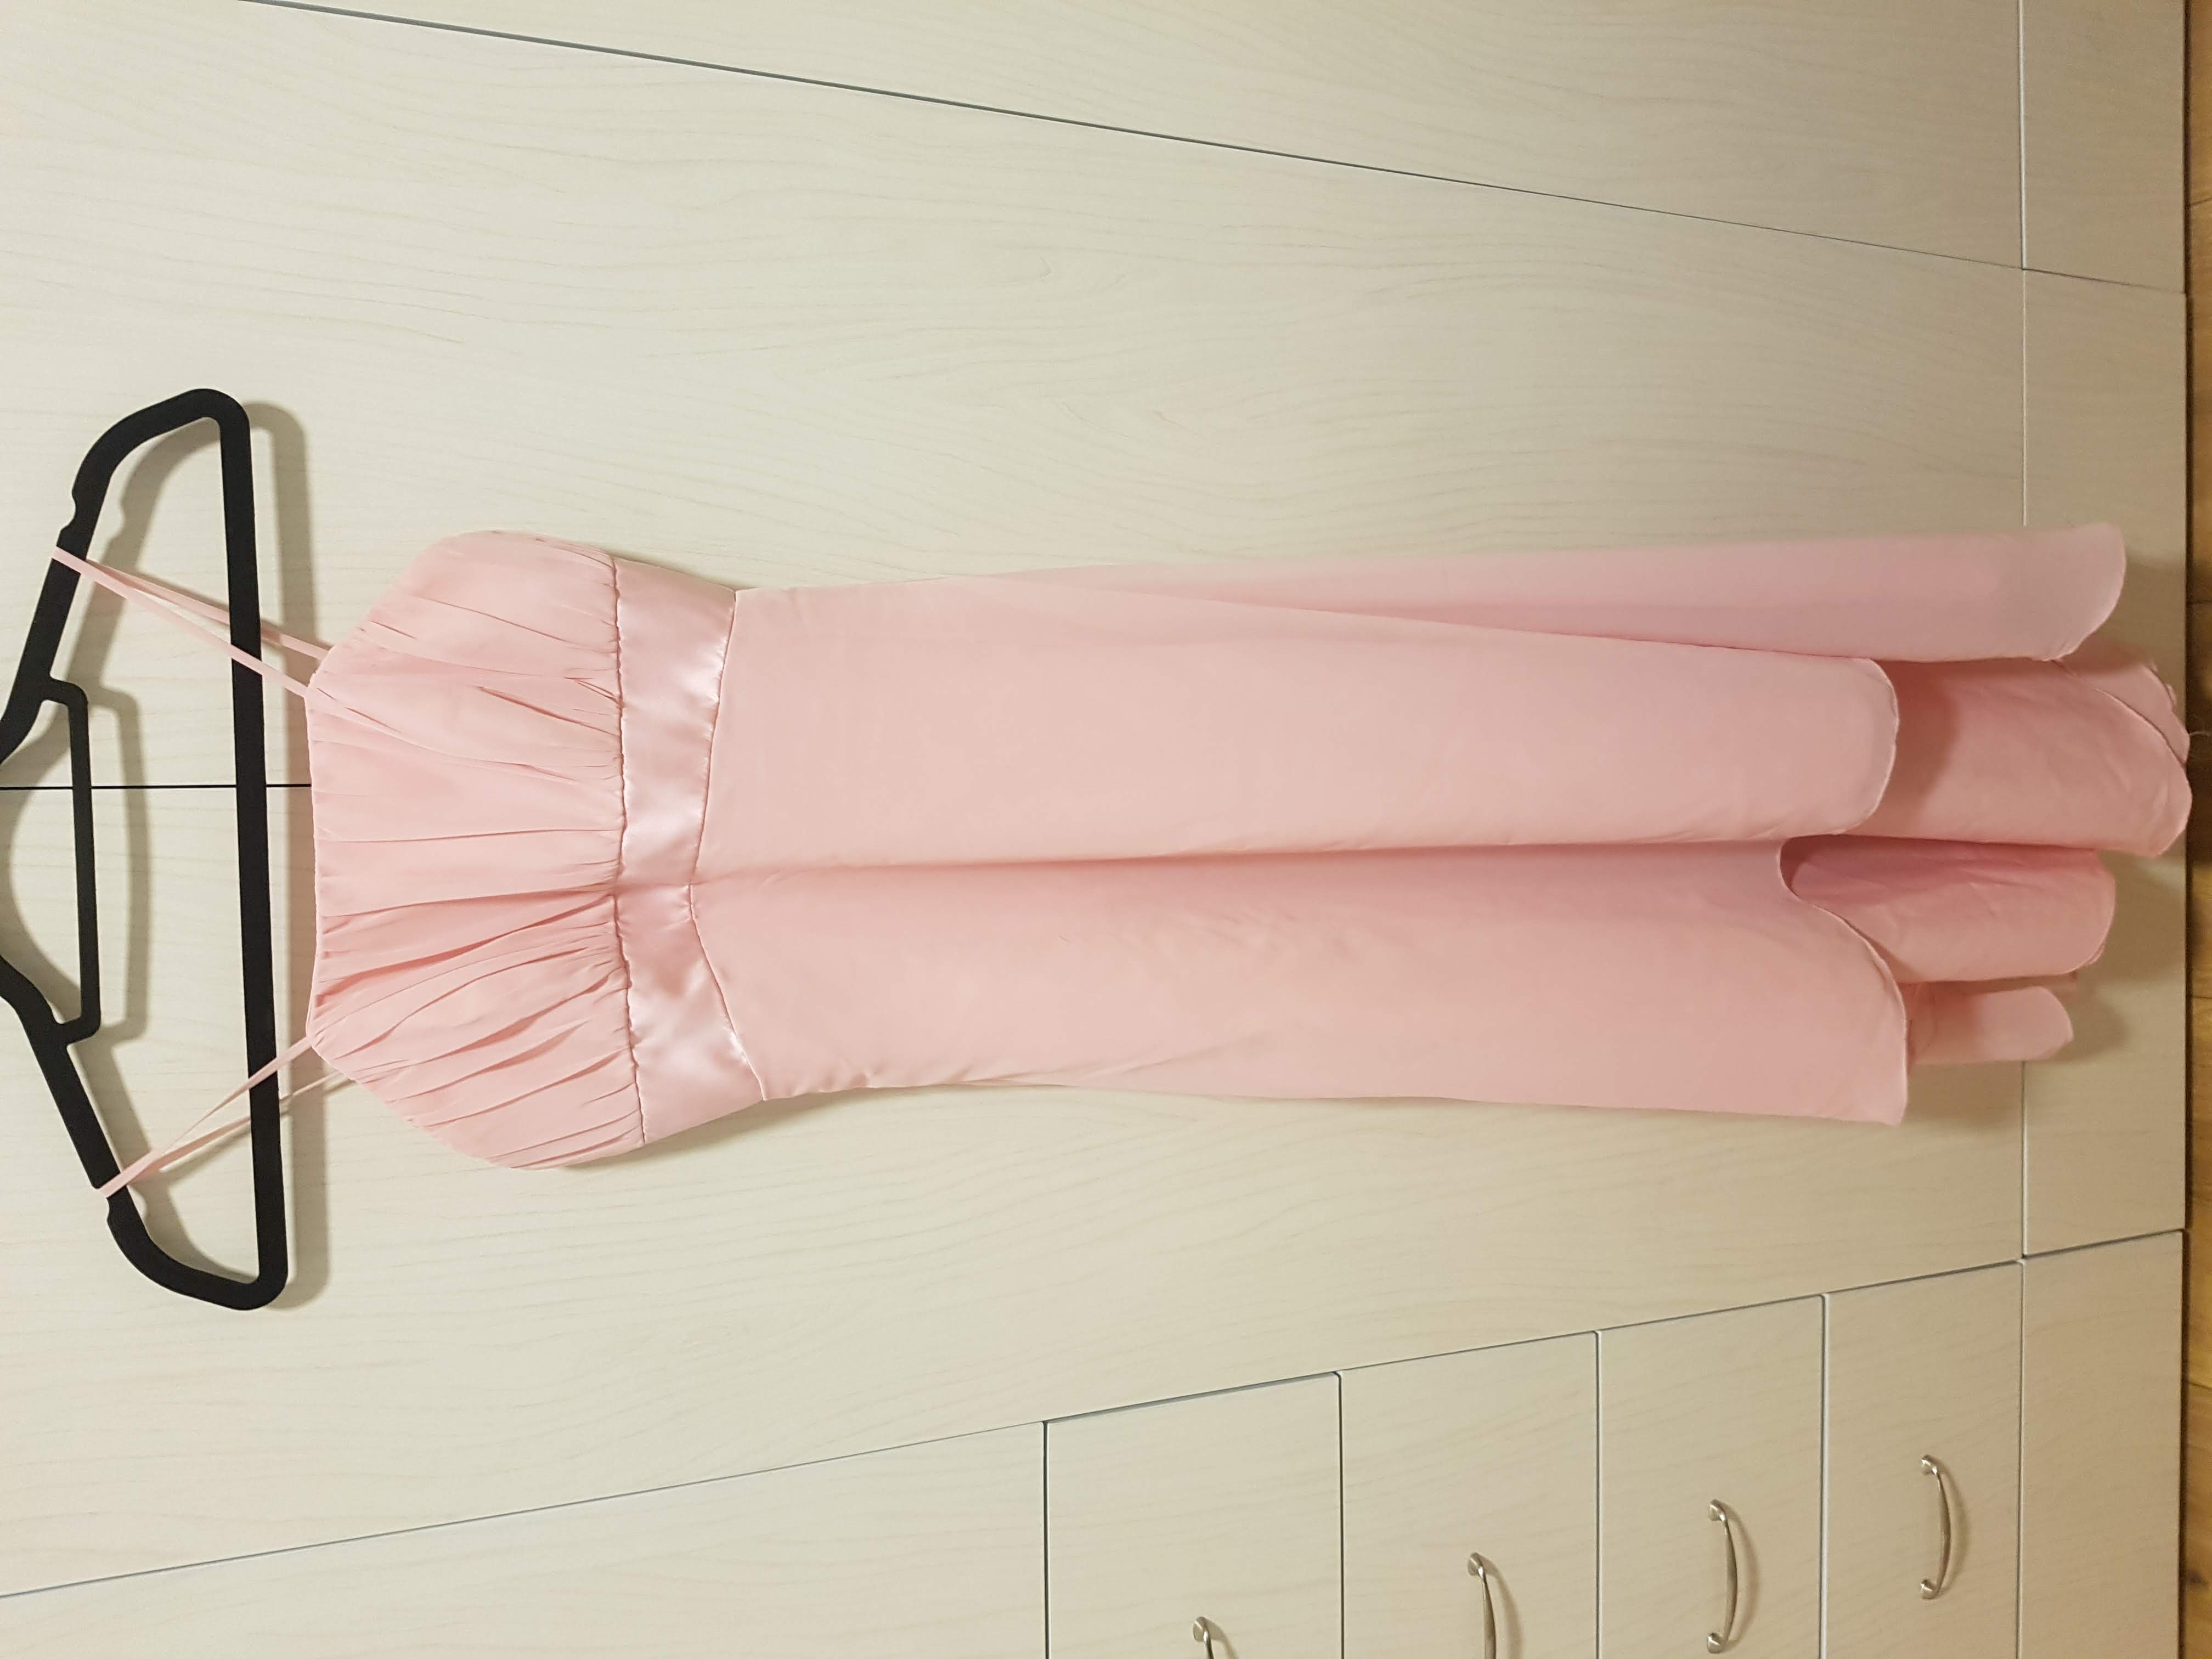 תמונה 1 ,שמלת מעצב לשושבינה לאירוע ערב למכירה באזור יד-שניה לנשים  בגדי נשים